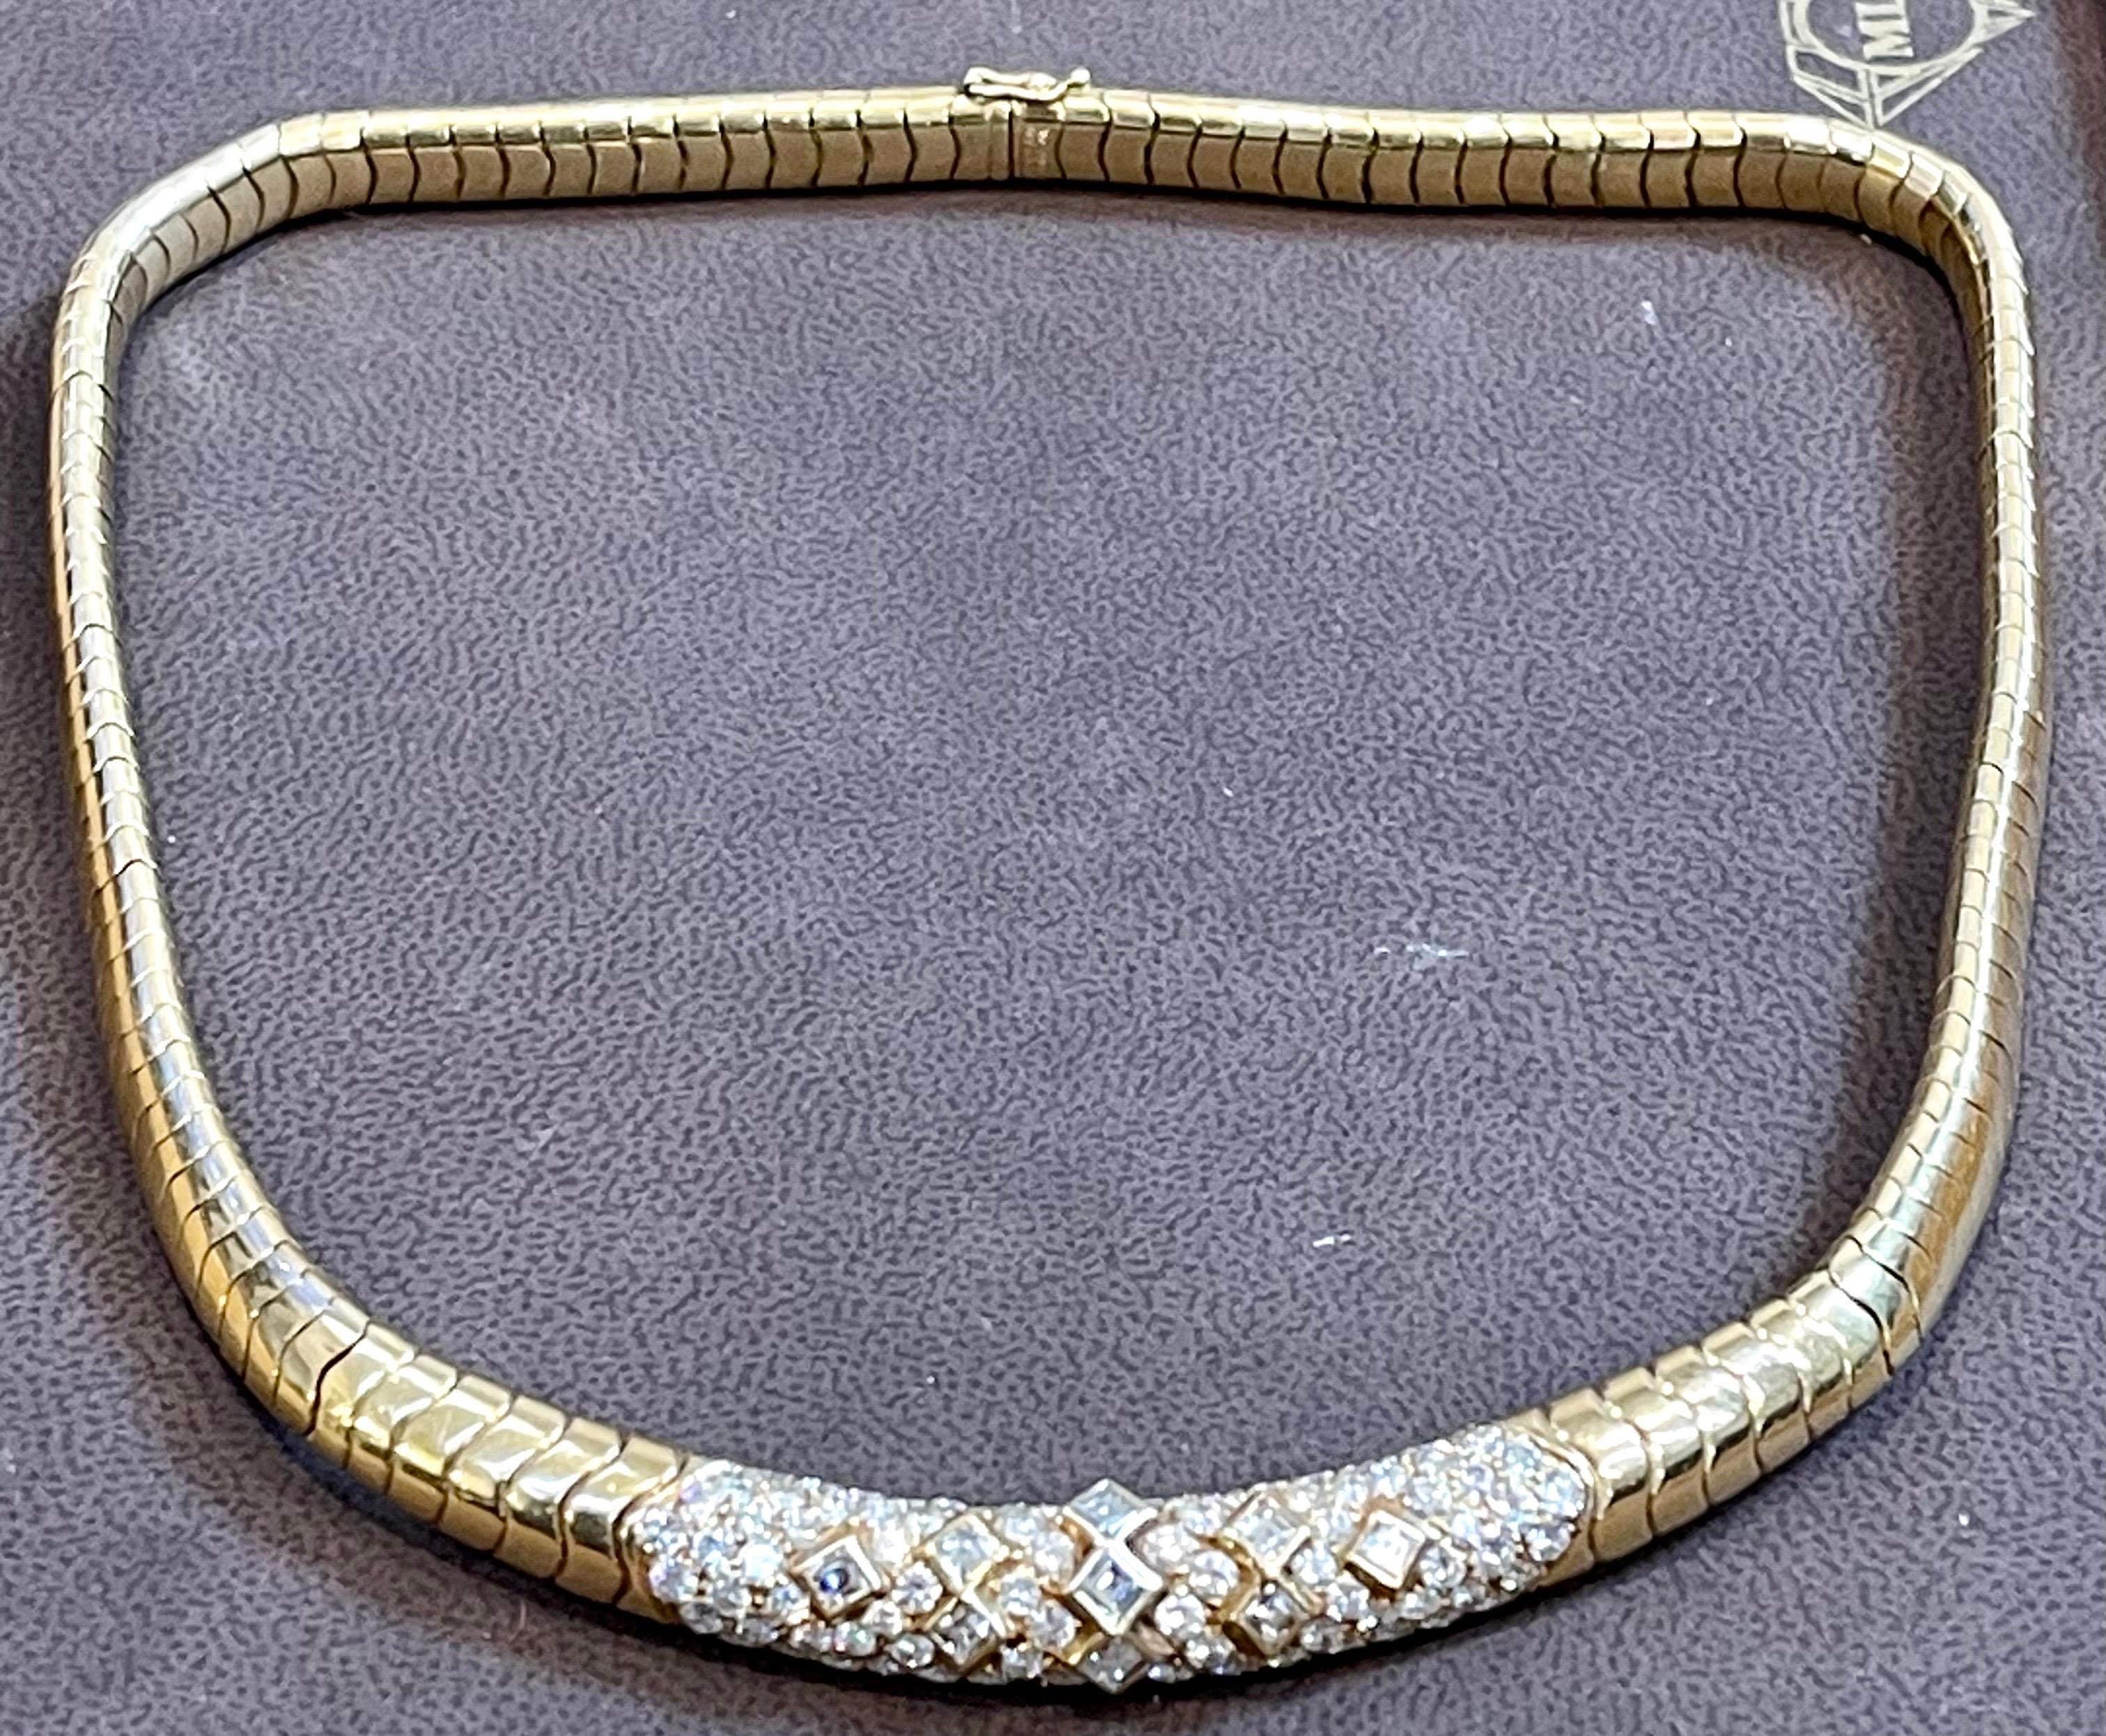 Dieses renommierte Stück von Van Cleef & Arpels ist mit einem Gewicht von ca. 5,6 Karat besetzt und mit einer Opulenz aus weißen Diamanten besetzt.  Alle sind fein in 18 Karat Gelbgold gefasst. Das Gewicht der Halskette beträgt 115 g.
Die Tafel in